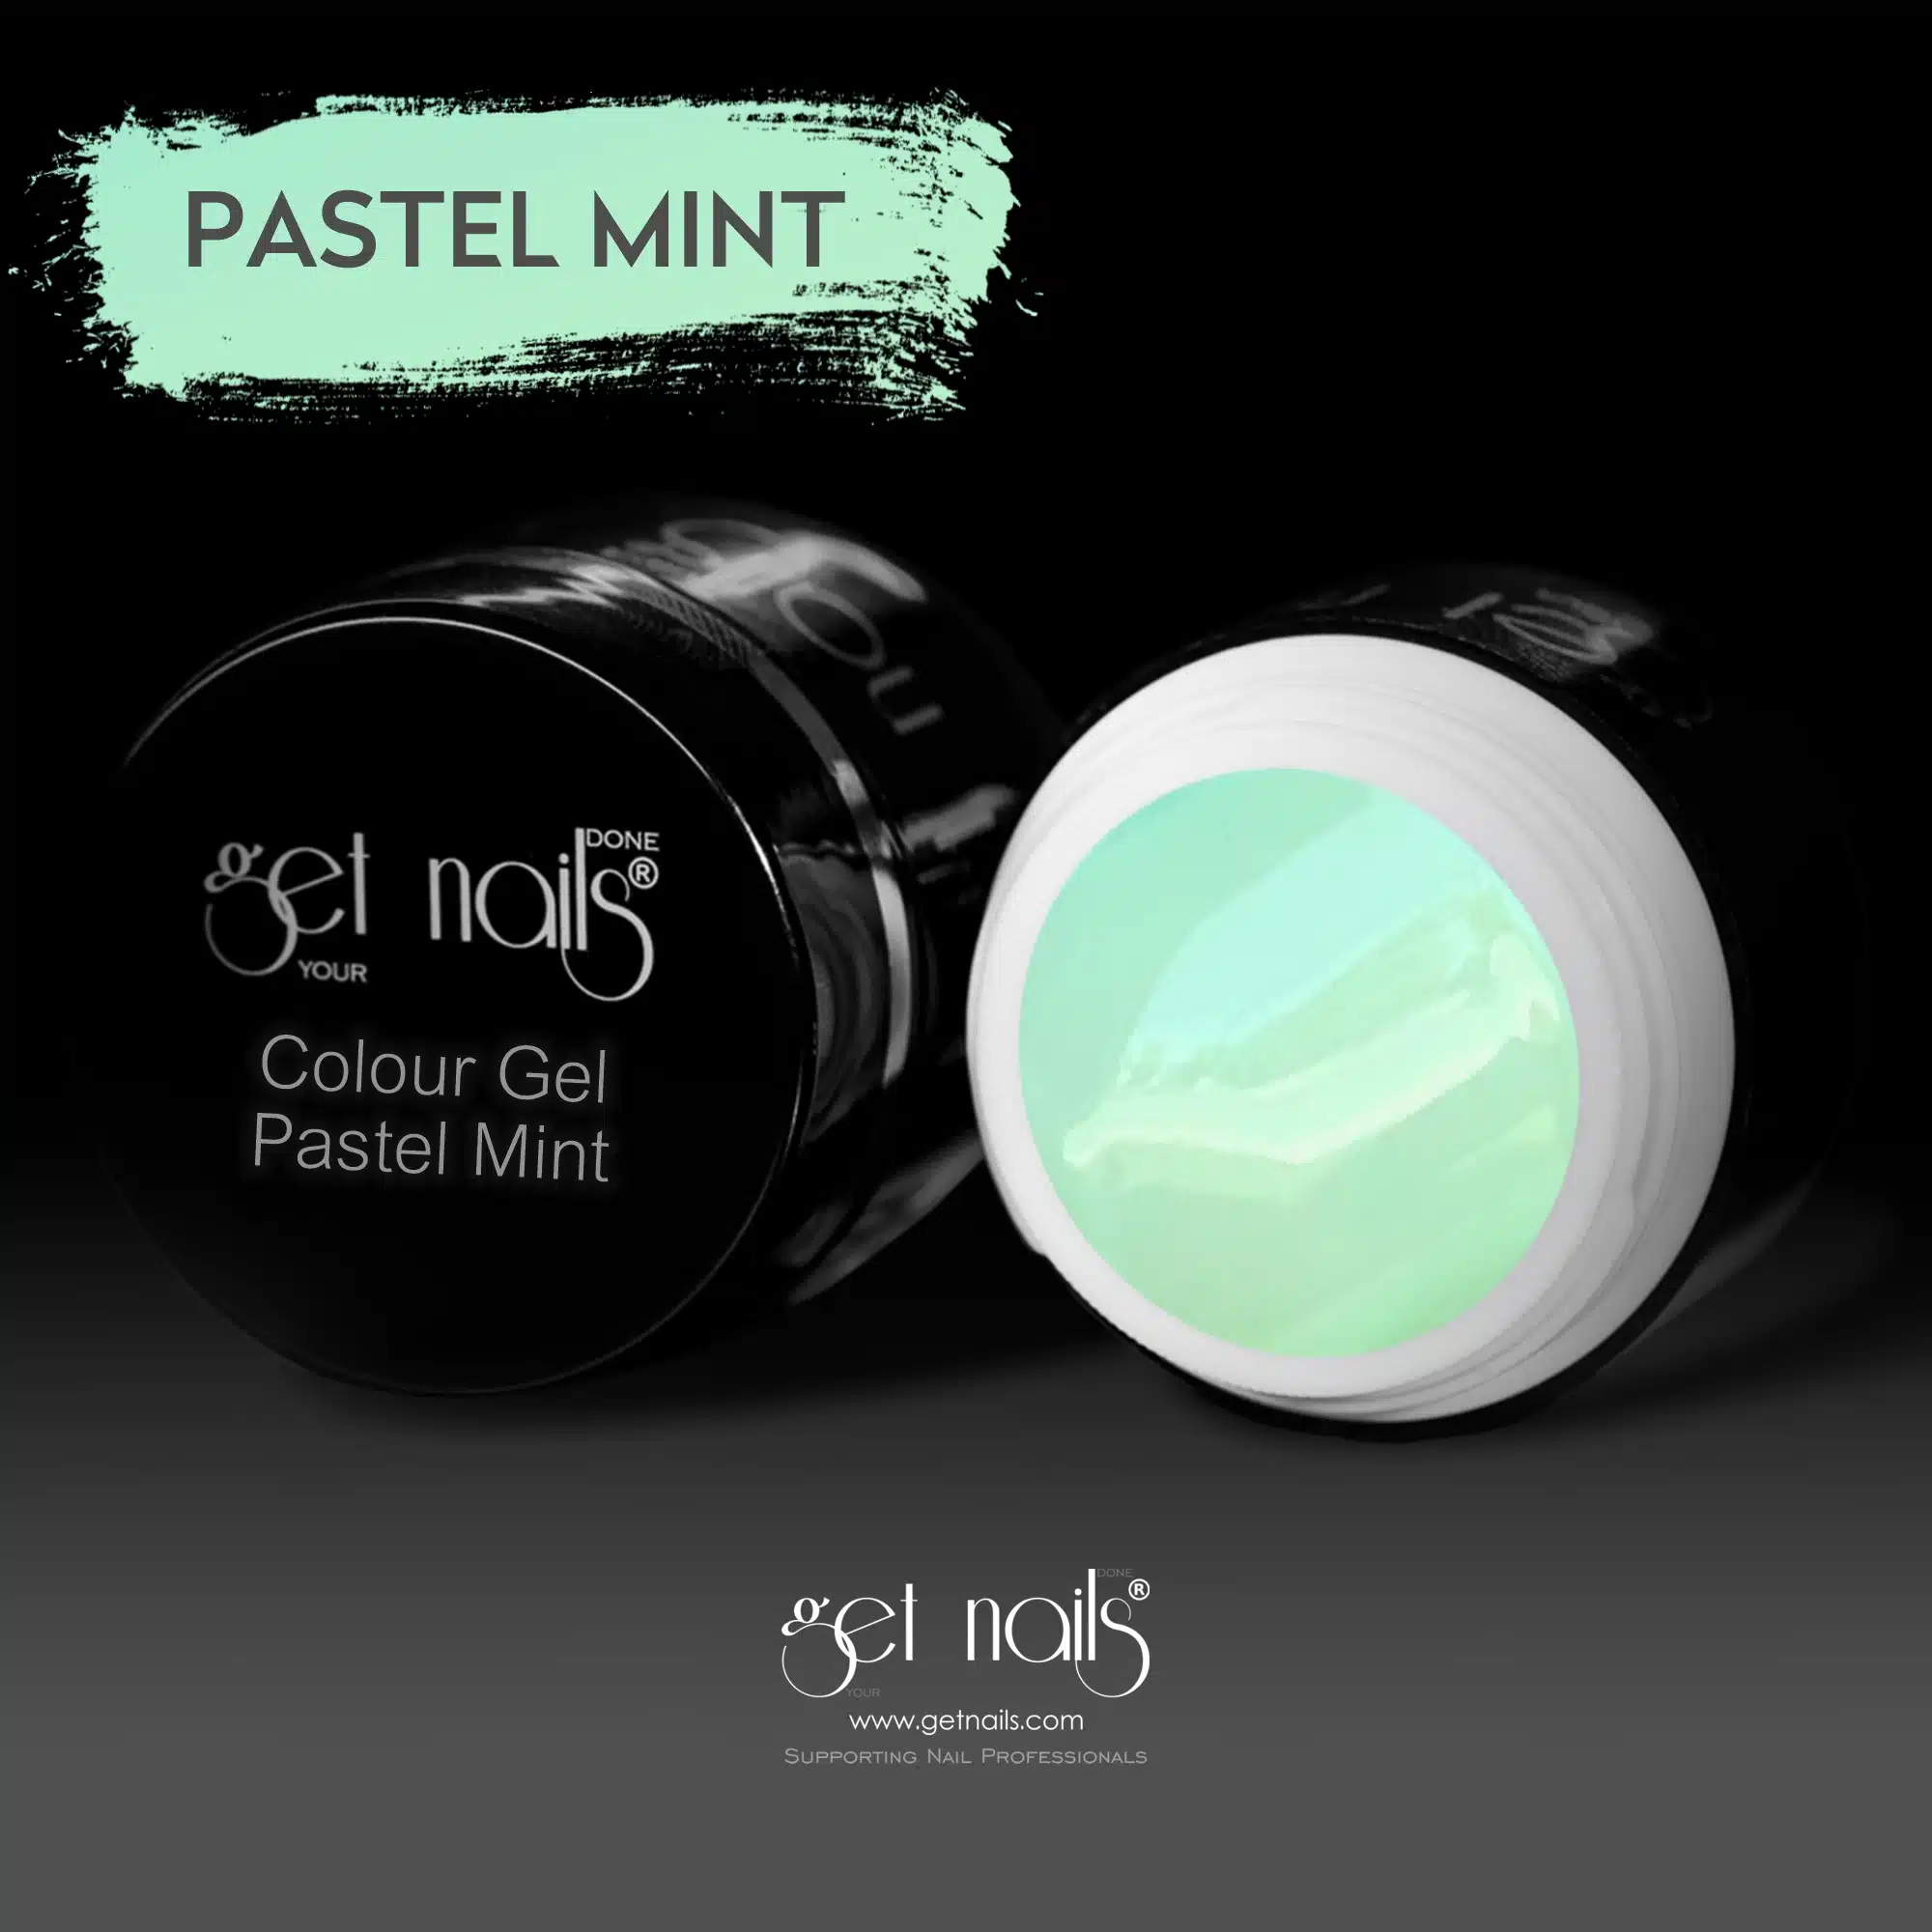 Get Nails Austria - Gel colorato Pastel Mint 5g